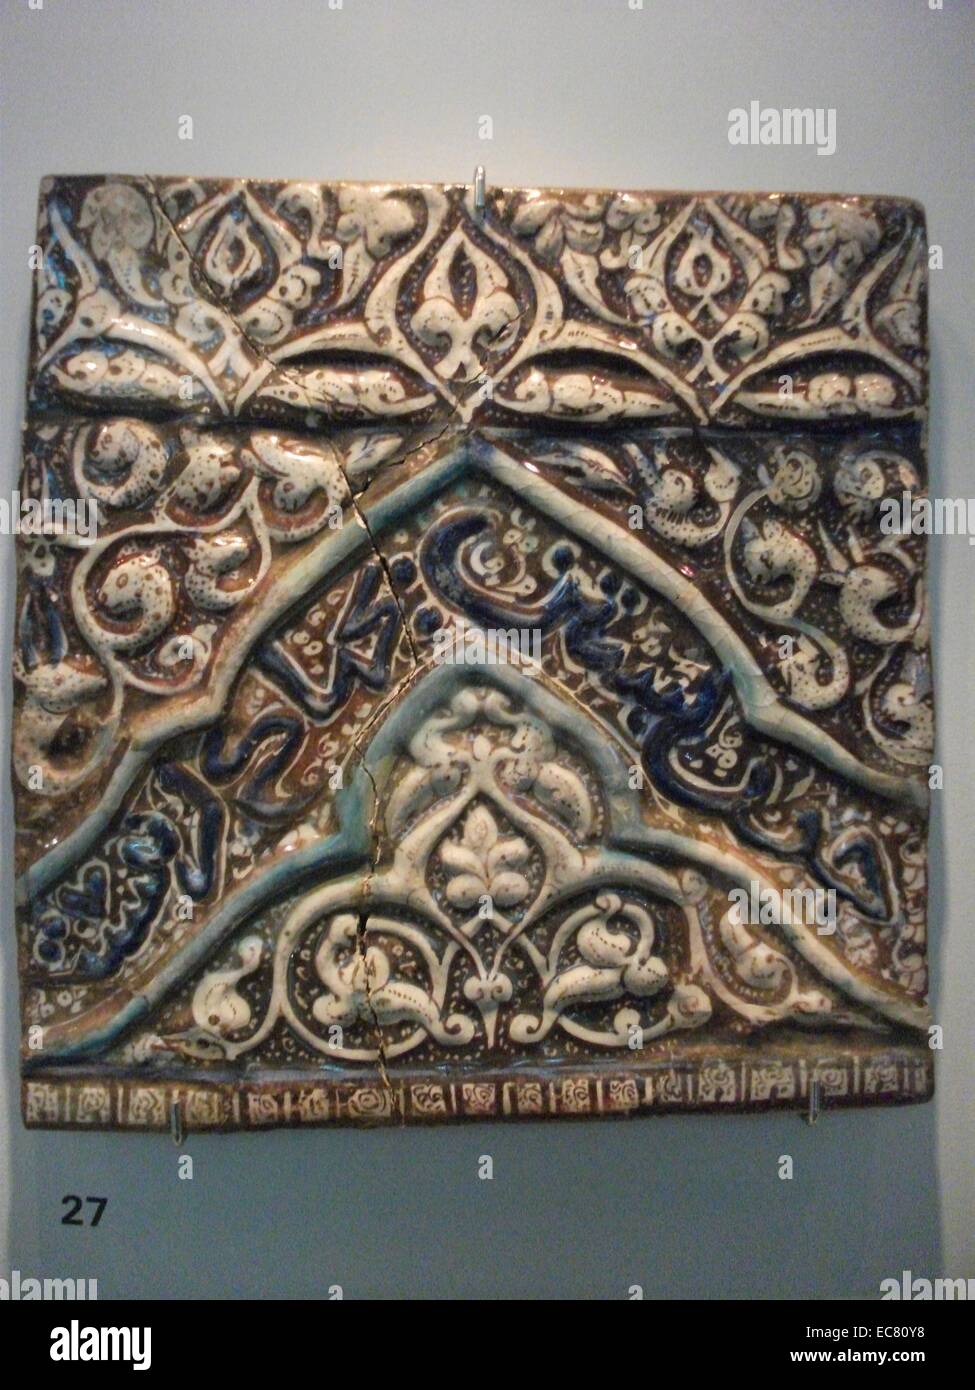 Iranische, braun, blau und weiß glasierten Fliesen, Persische, 13. - 14. Jahrhundert. Die Herstellung von Fliesen (glasierten Ziegeln) im Iran geht so weit zurück wie der prähistorischen Zeit. Stockfoto